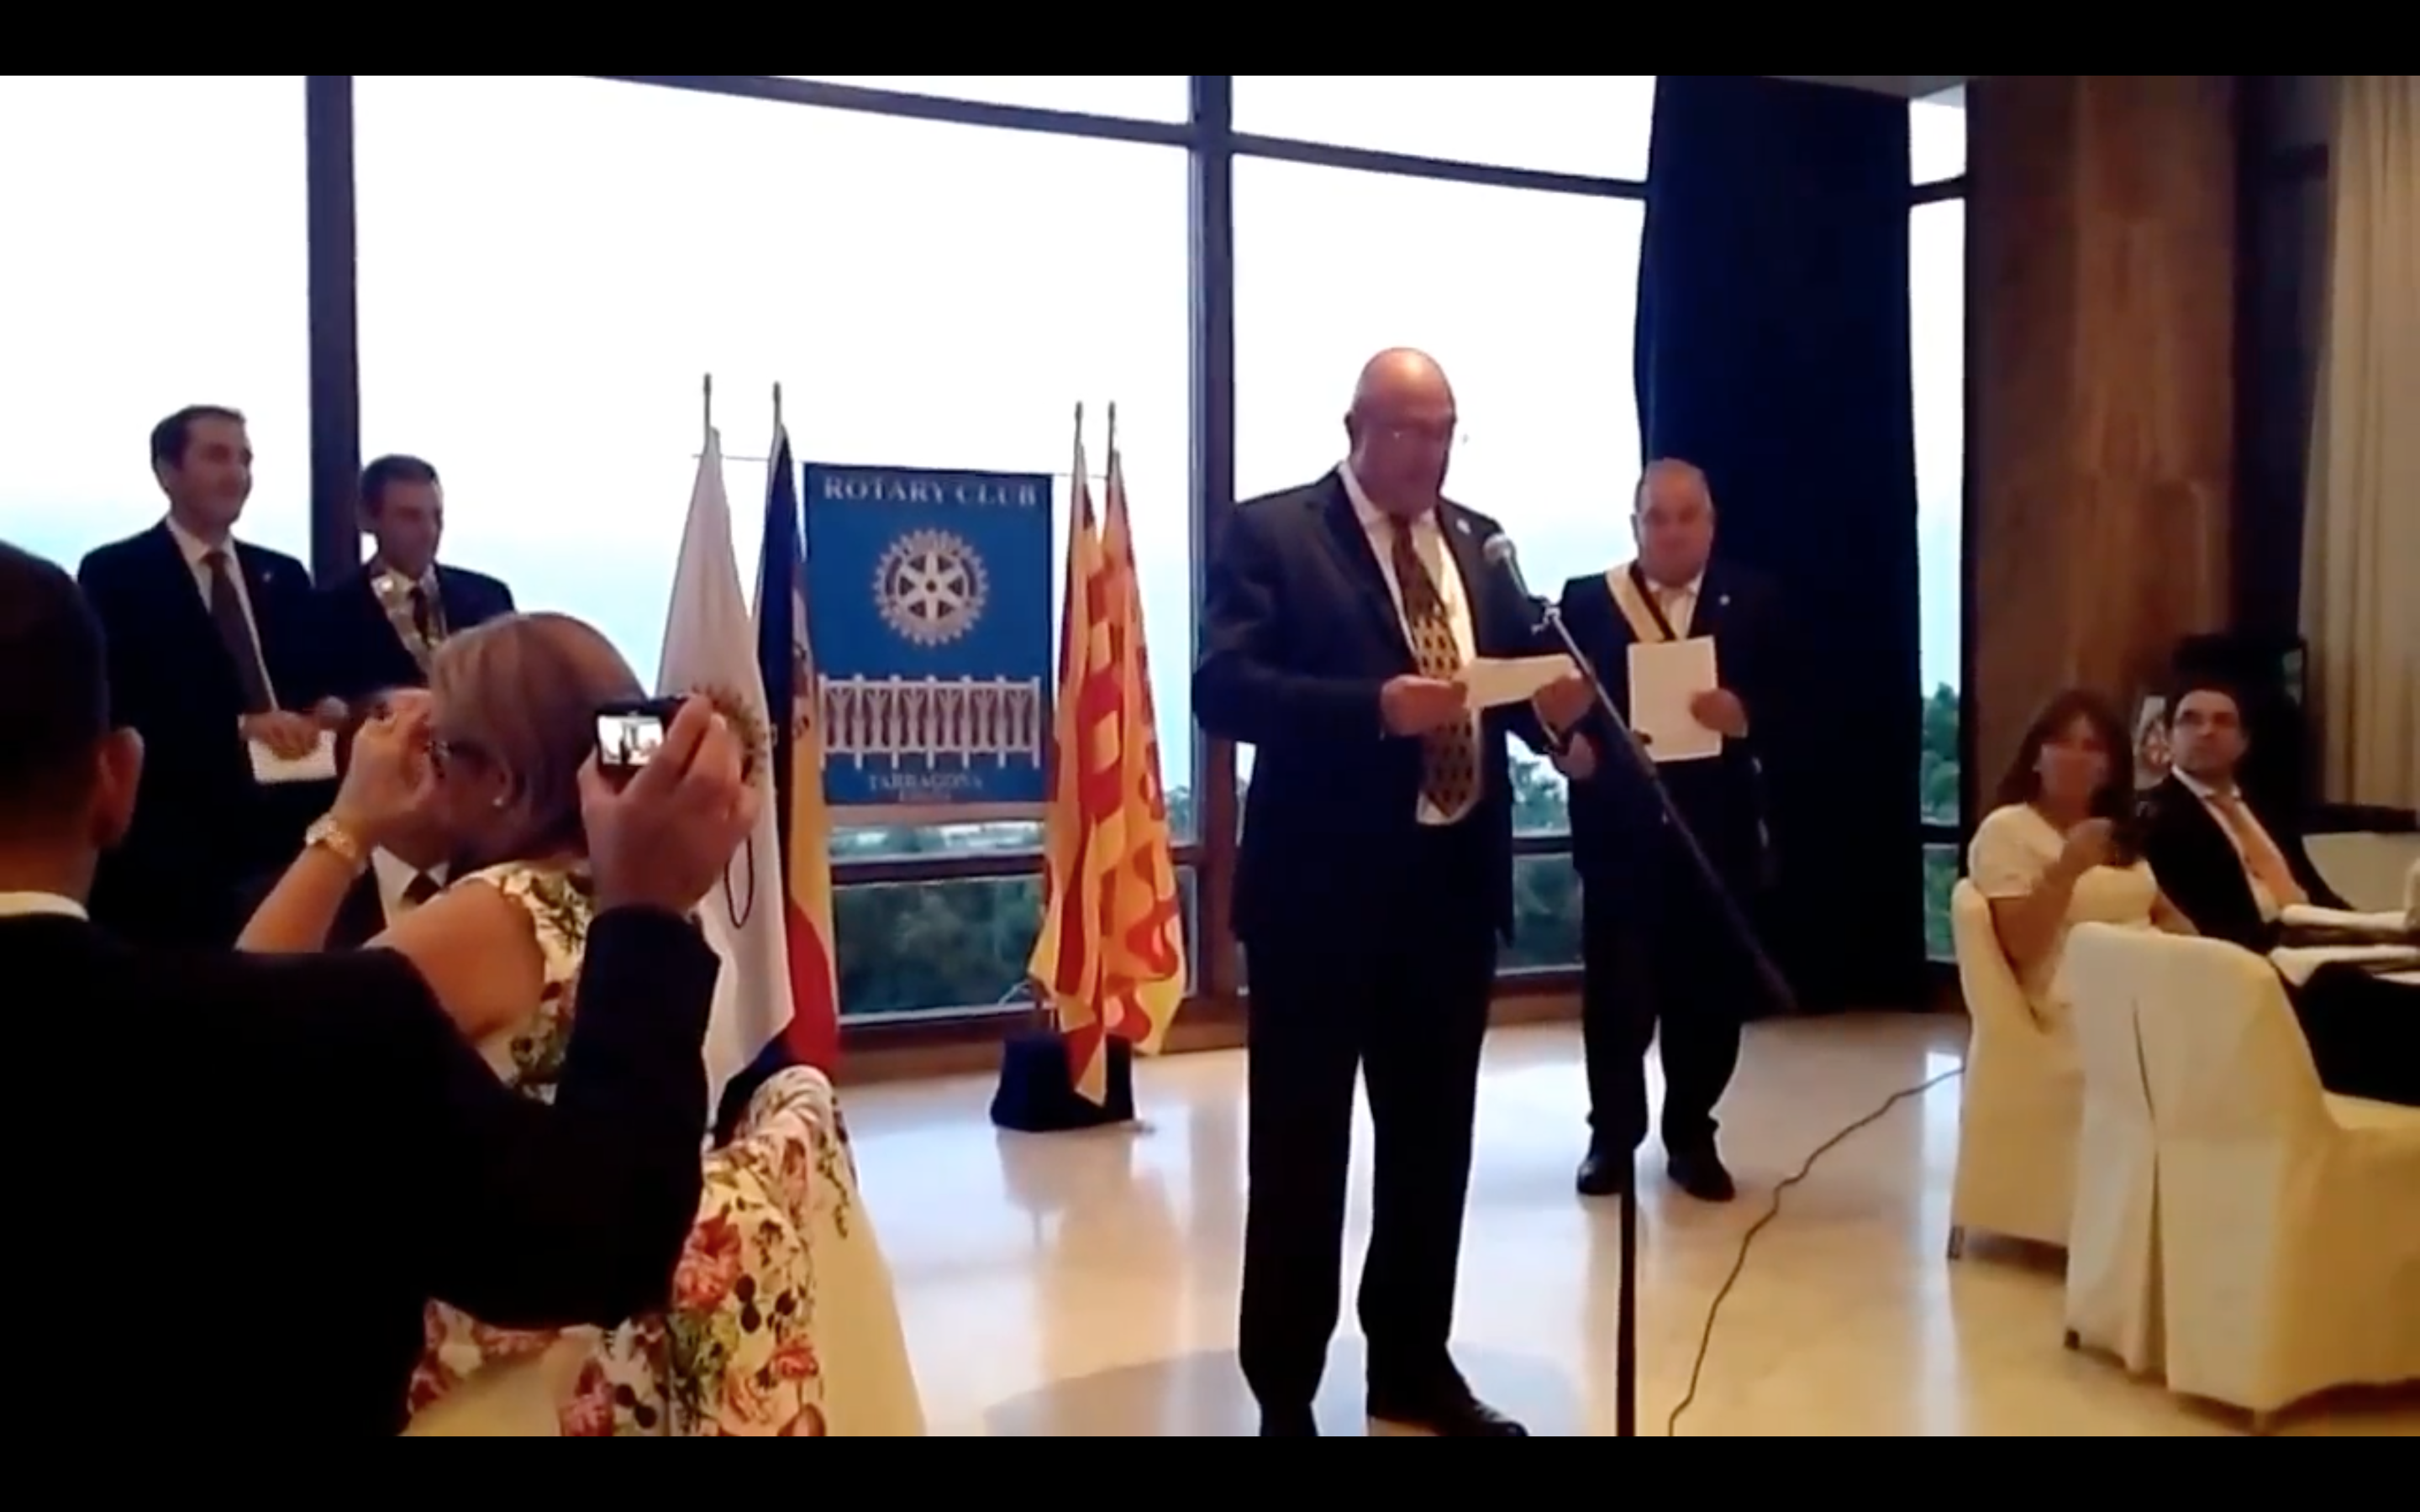 Guido Giannoli, compañero del Club de Tenerife Sur gana el premio Rotario del Año.